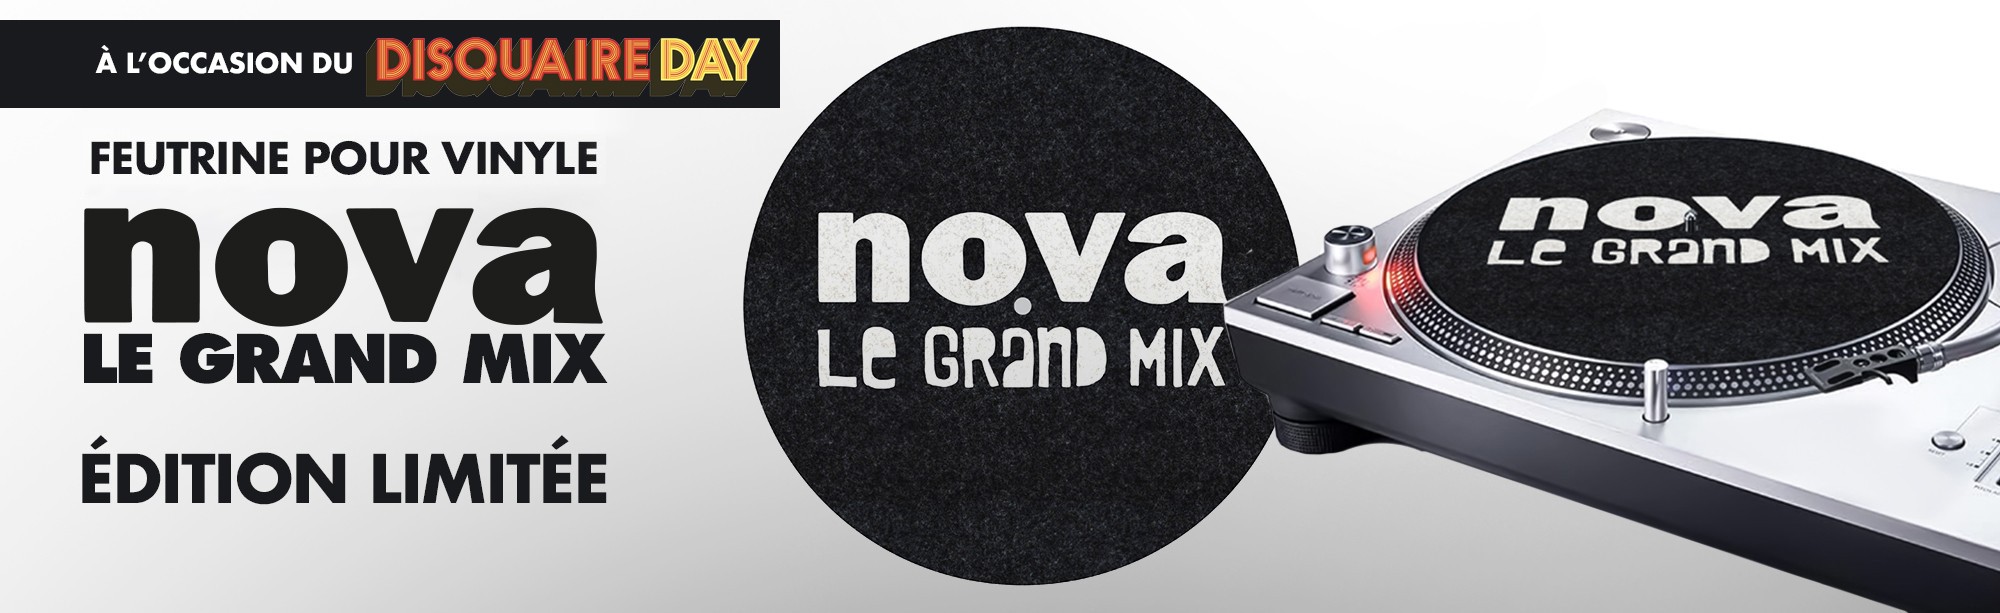 Feutrine Nova Le Grand Mix pour habiller votre platine vinyle.